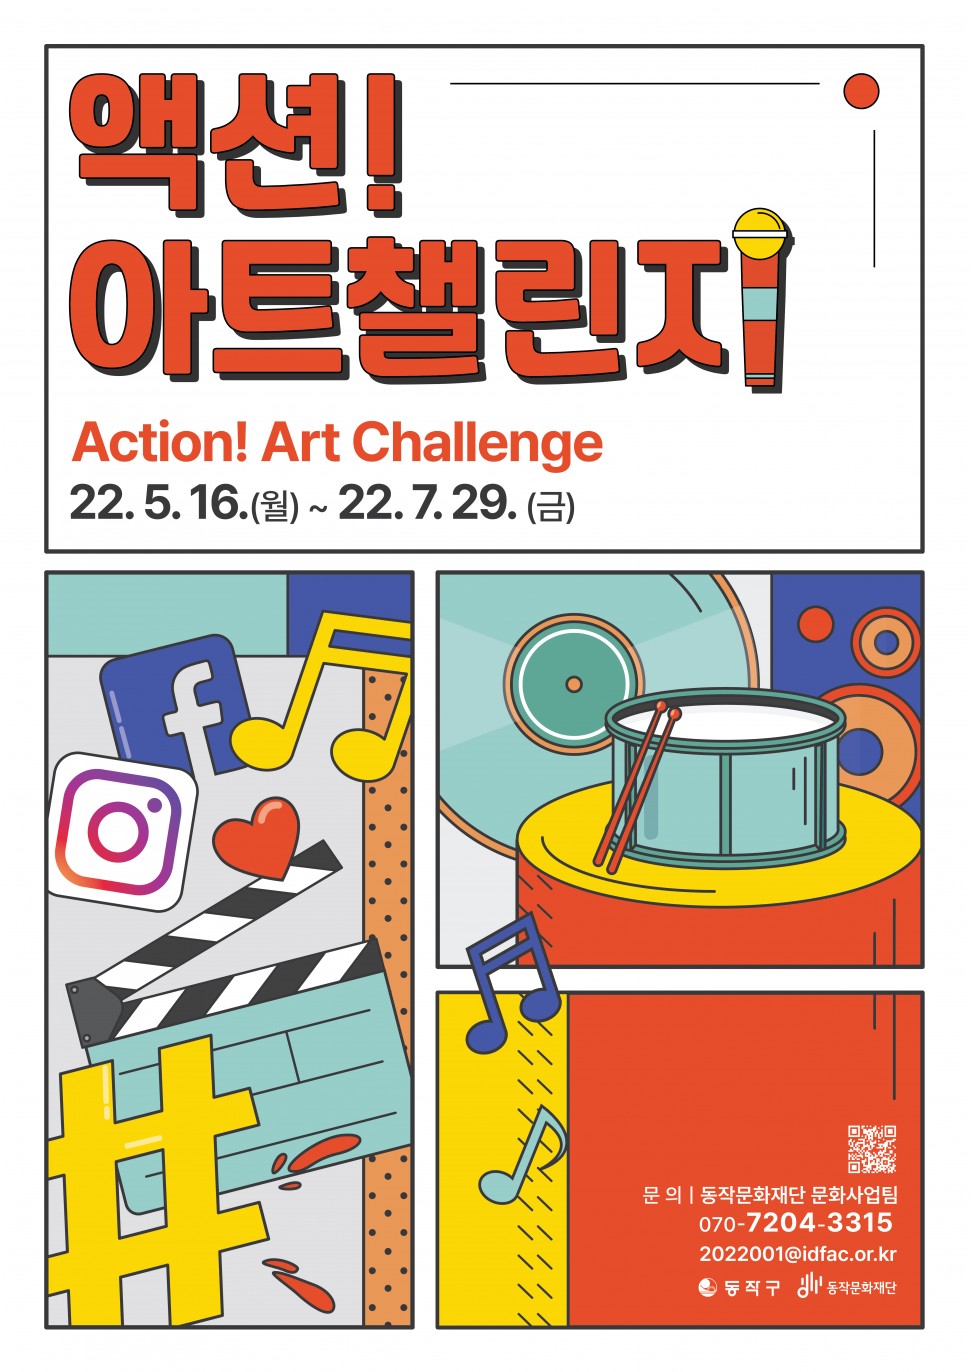 액션 아트챌린지 Action! Art Challenge 22.5.16.(월)~22.7.29.(금)| 문의: 동작문화재단 문화사업팀 070-7204-3315 / 2022001@idfac.or.kr | 동작구 동작문화재단